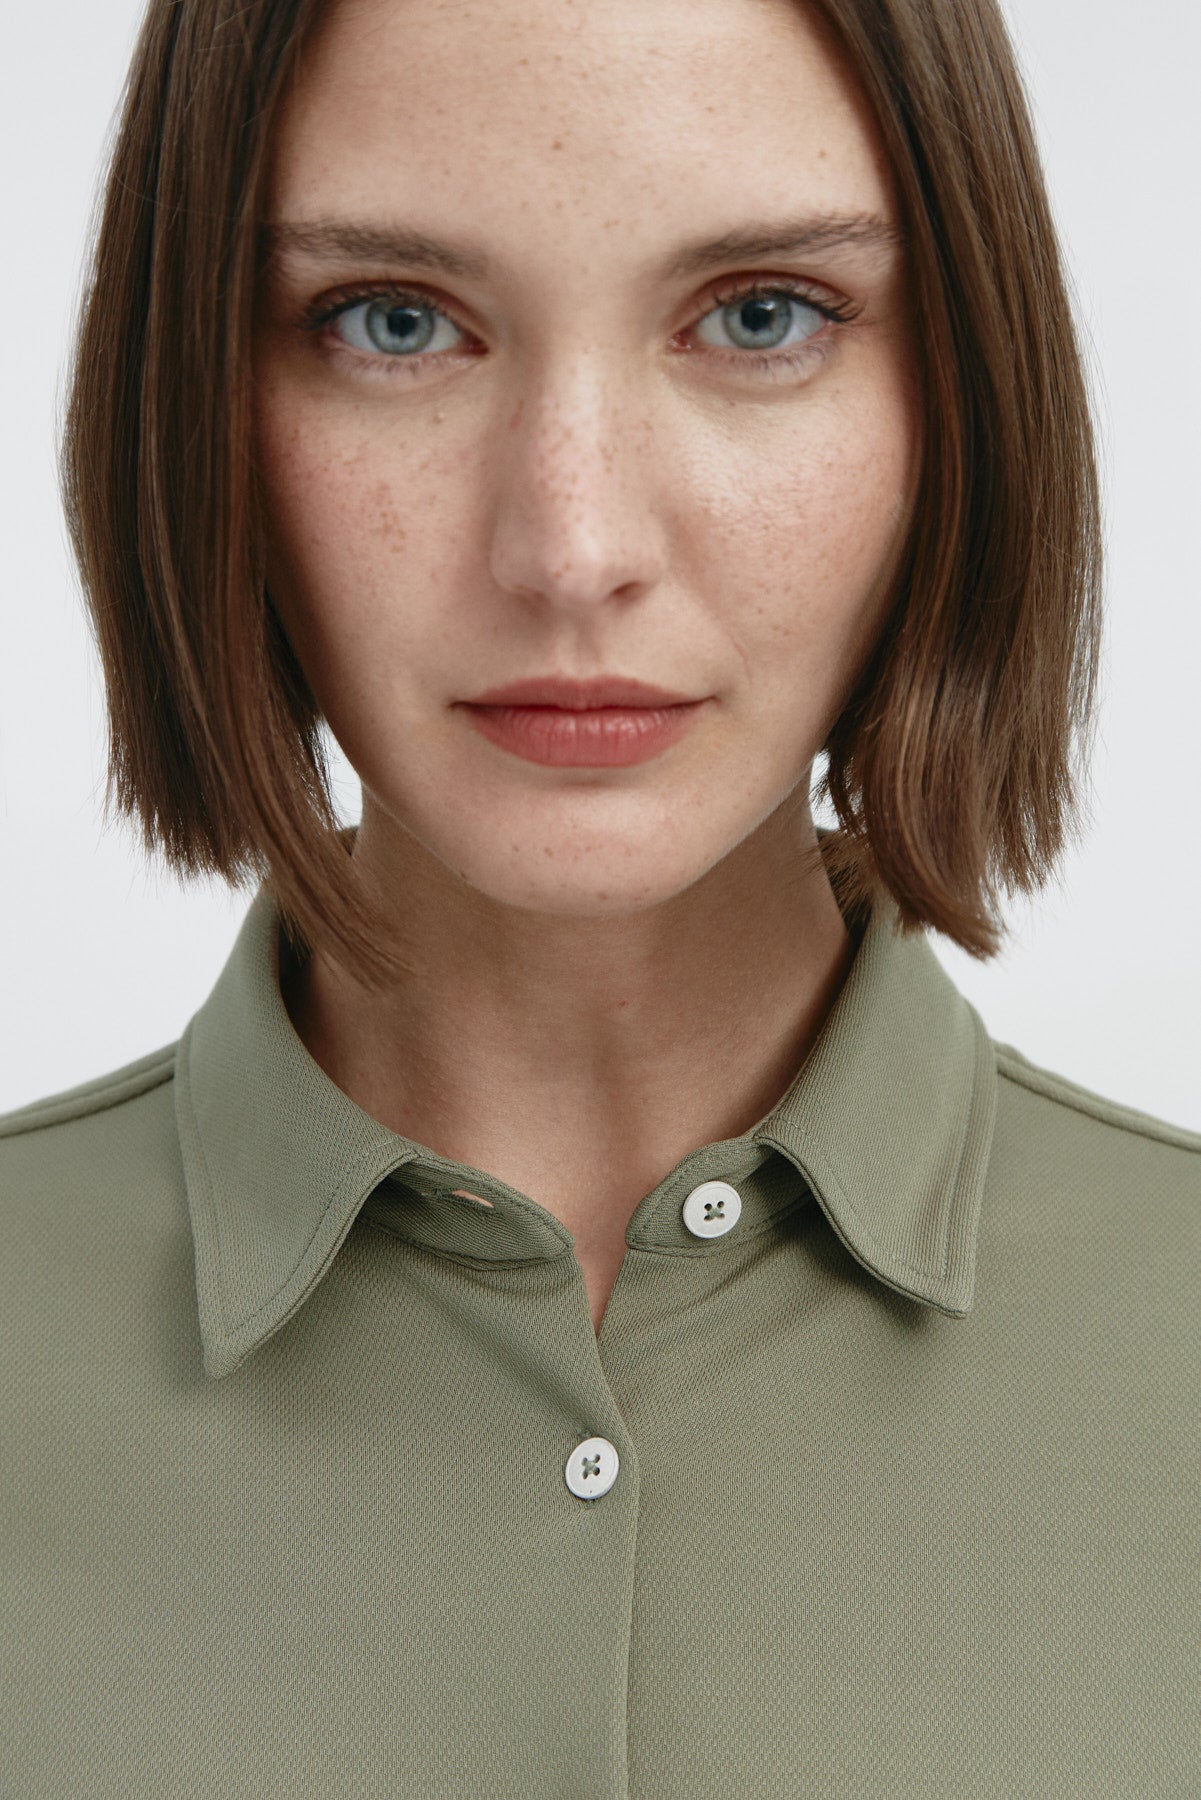 Camisa para mujer slim color verde malaquita, básica y versátil. Foto retrato